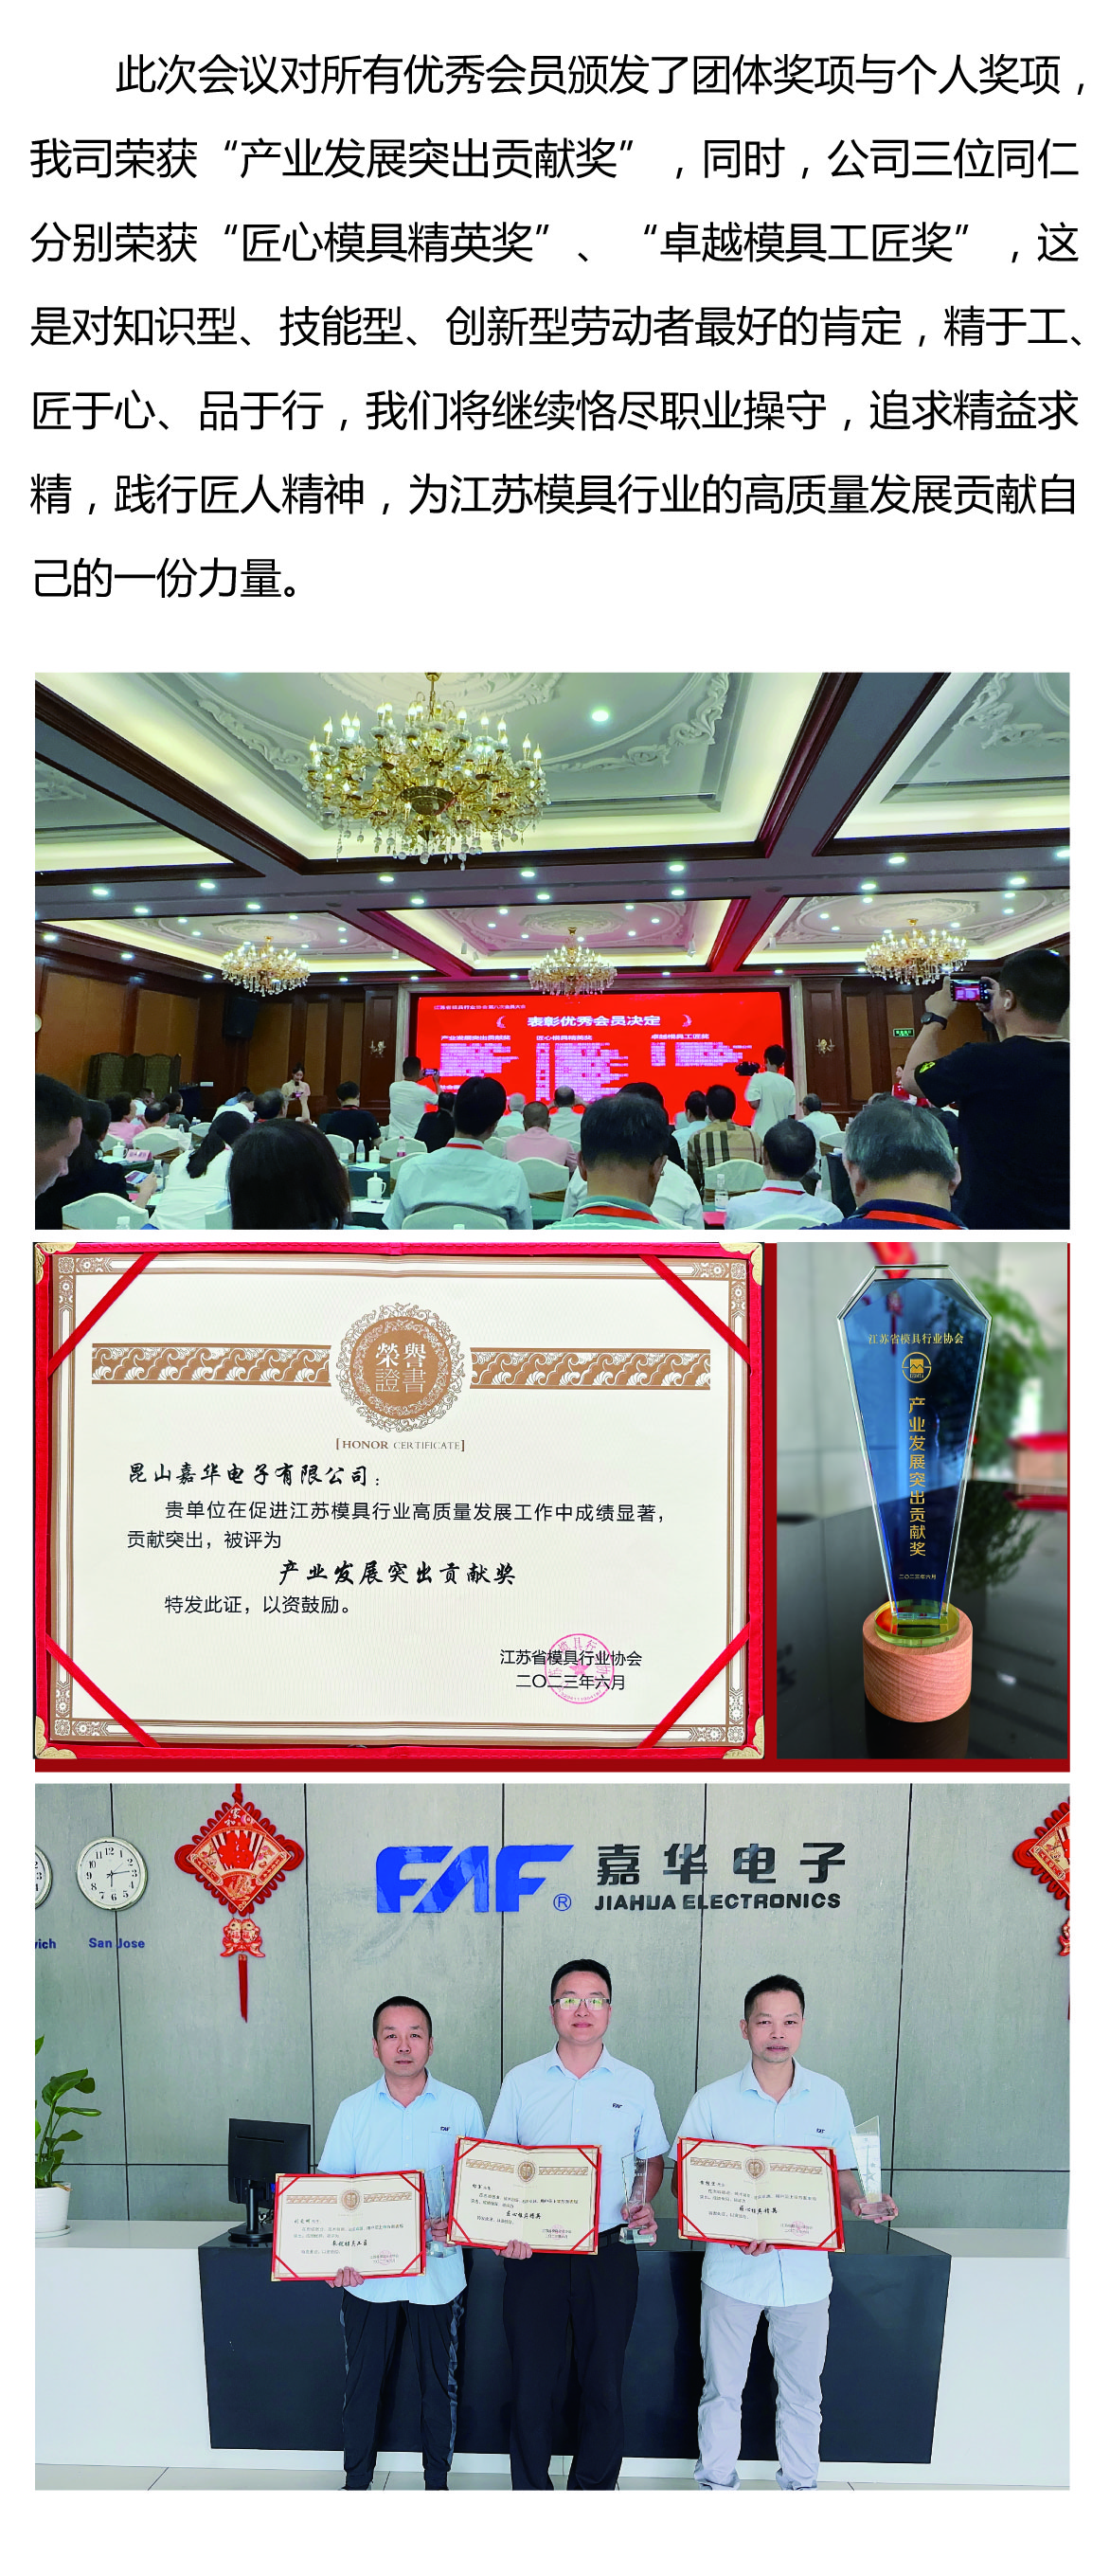 嘉华电子在江苏省模具行业协会第八次会员大会上荣获多个奖项 